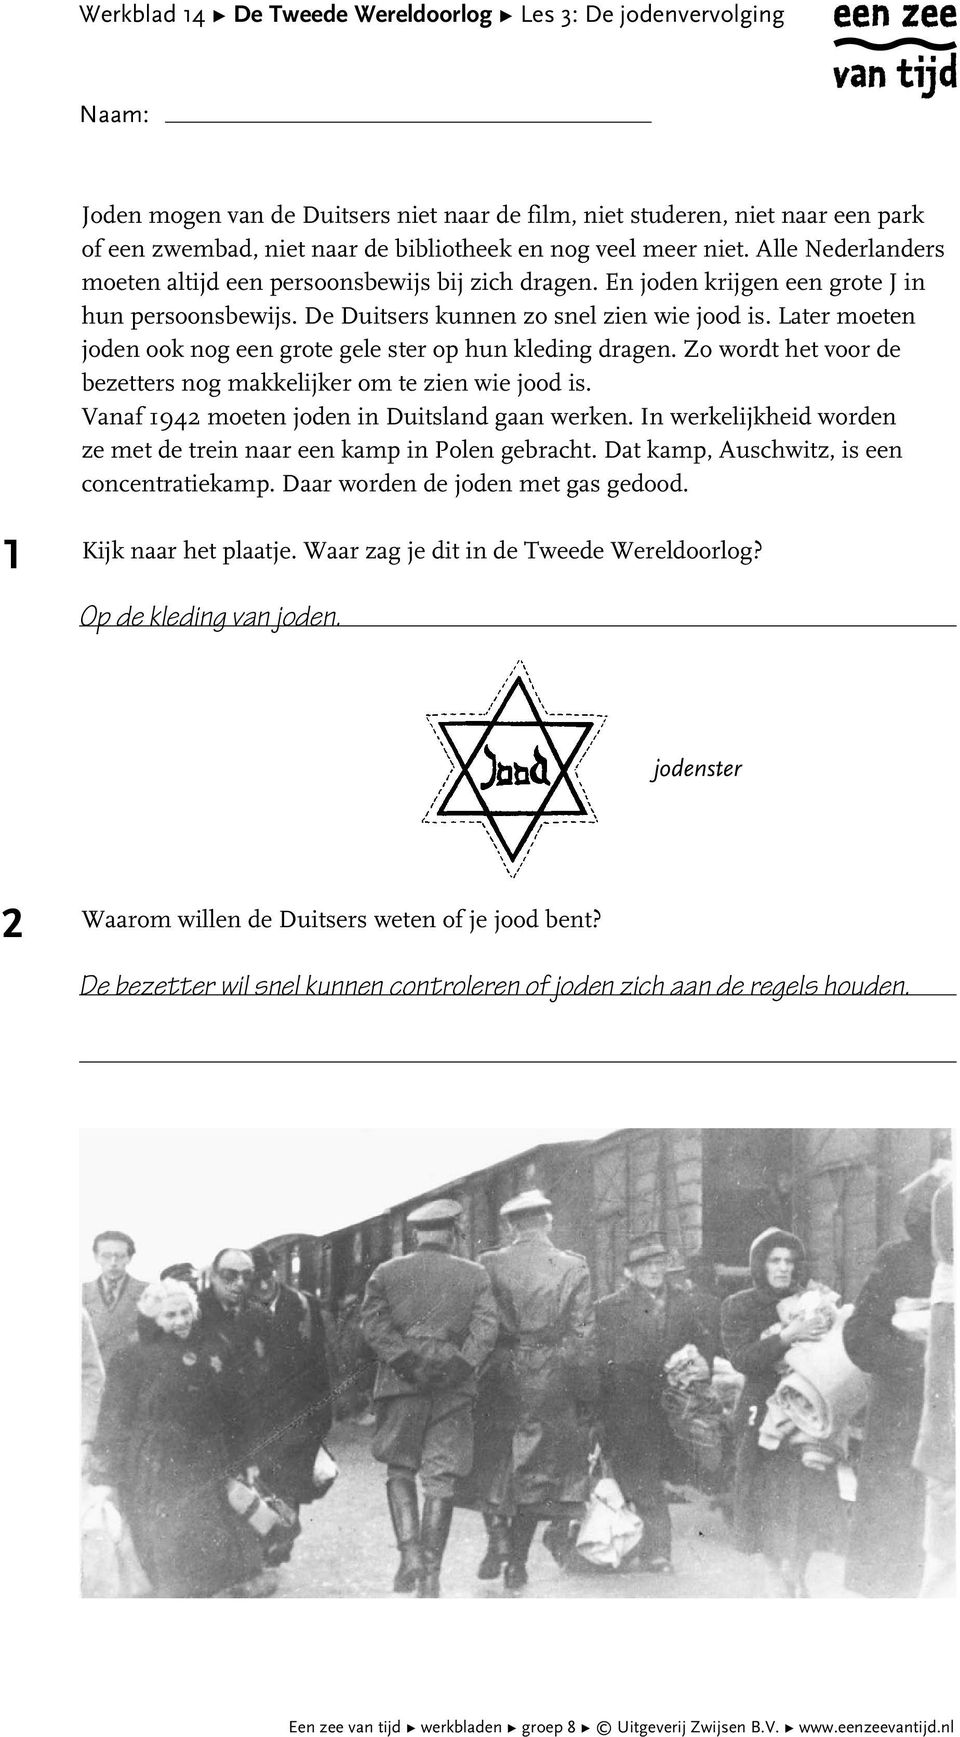 Later moeten joden ook nog een grote gele ster op hun kleding dragen. Zo wordt het voor de bezetters nog makkelijker om te zien wie jood is. Vanaf 94 moeten joden in Duitsland gaan werken.